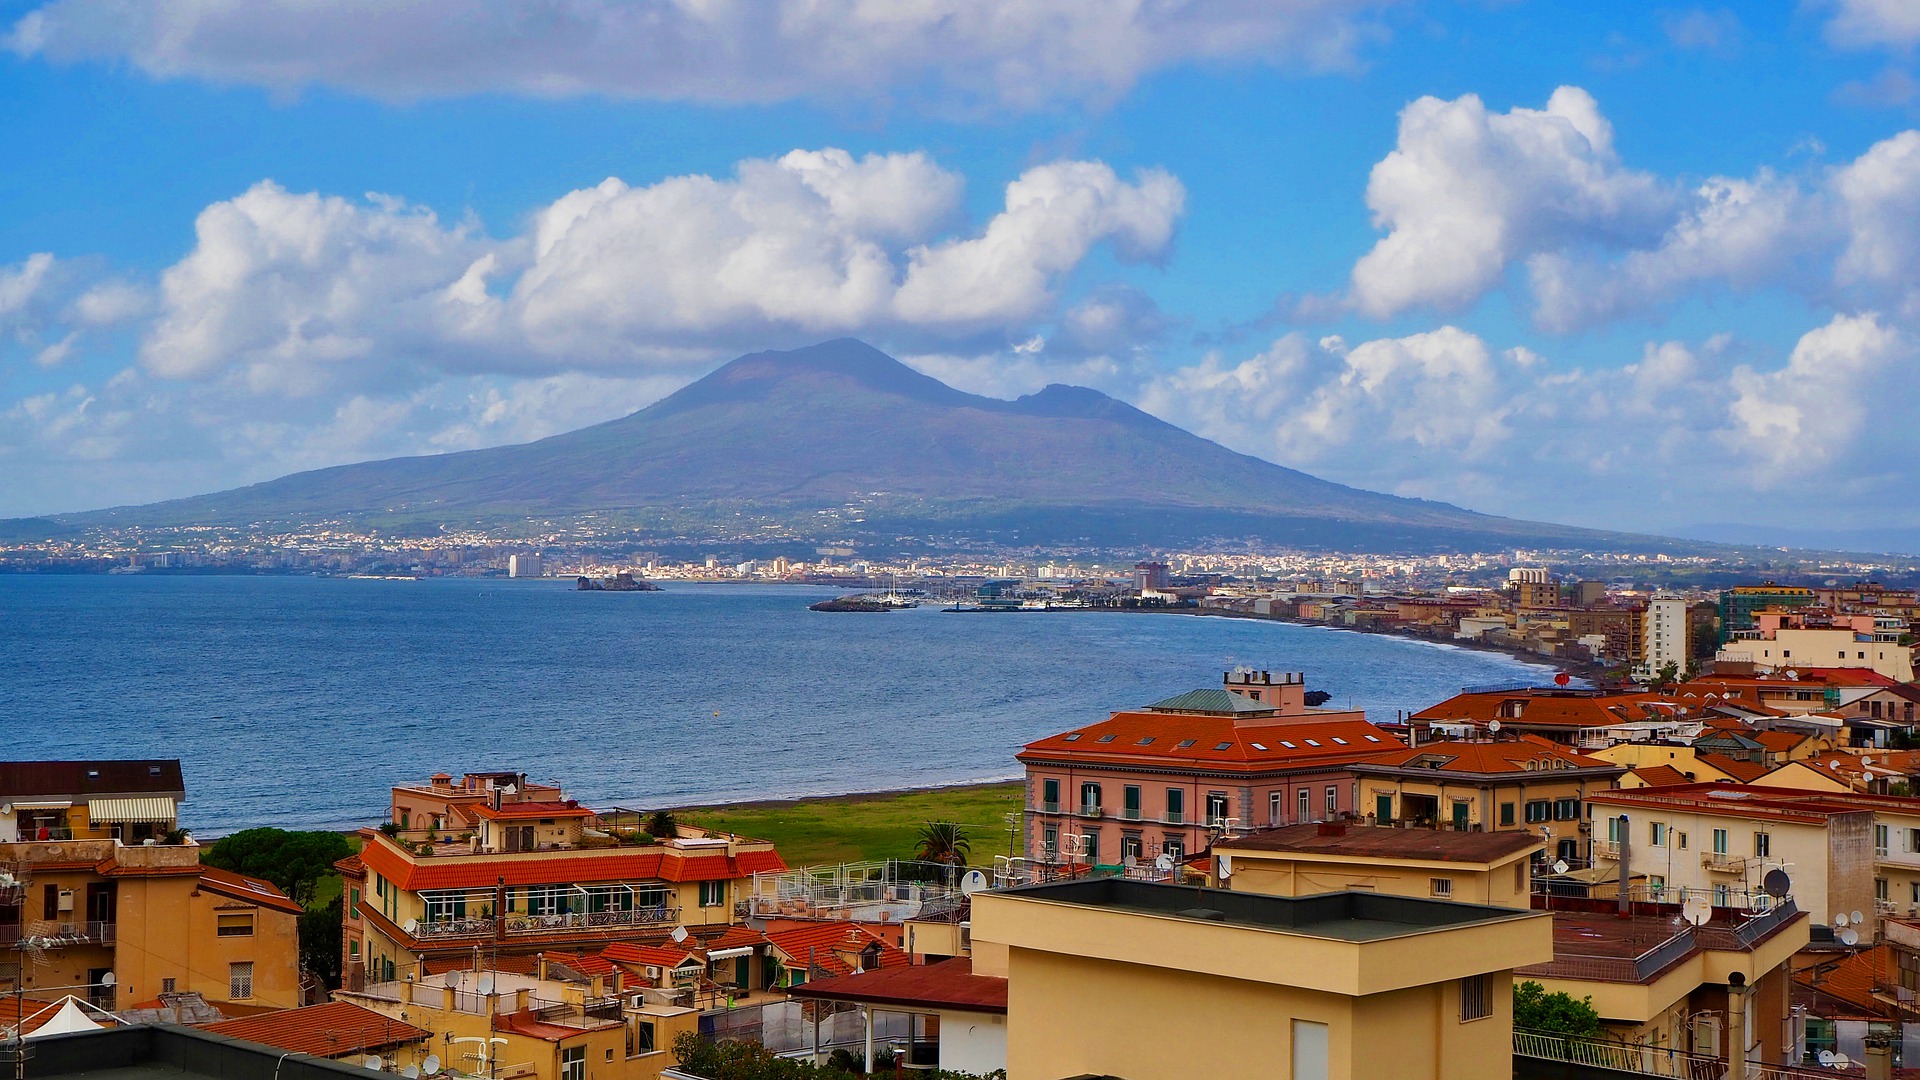 Naples Vesuvius